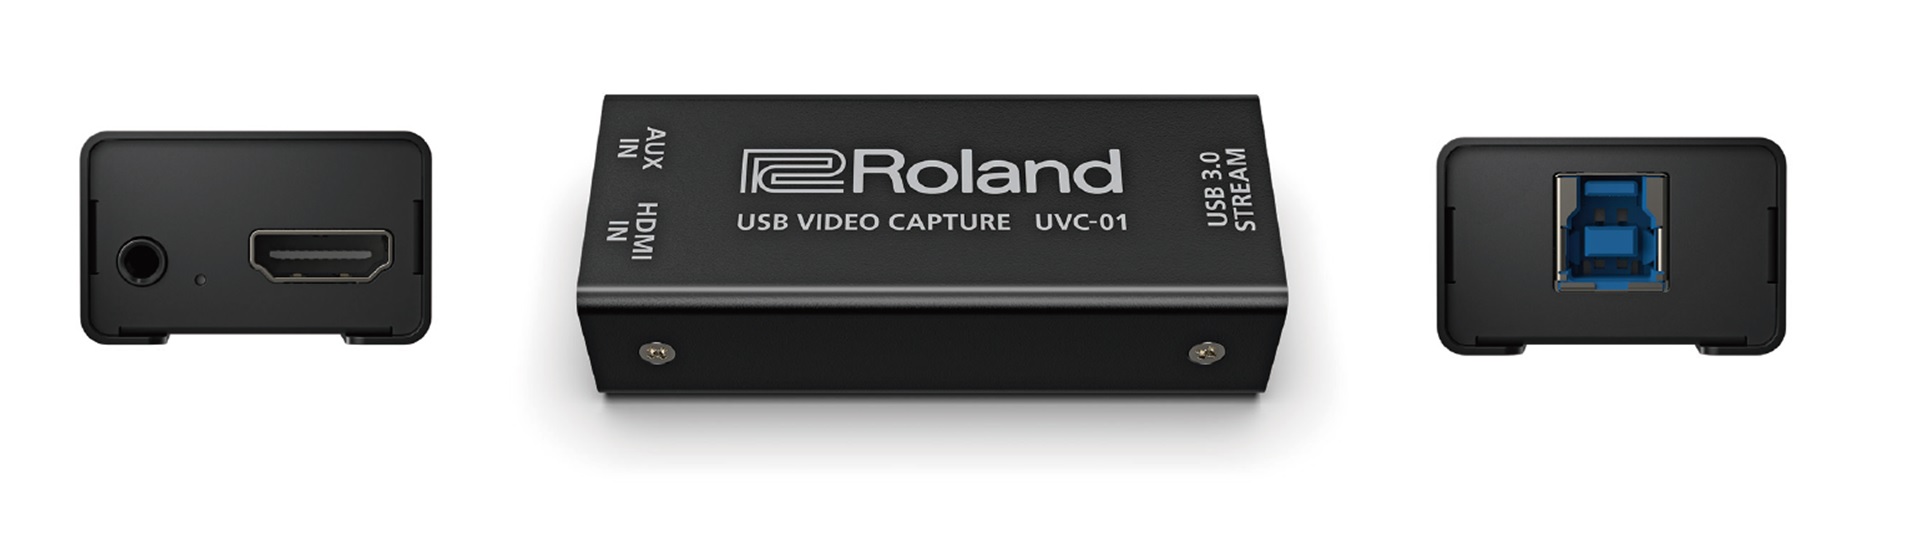 【新製品Roland / UVC-01】ビデオスイッチャーと組み合わせて簡単ライブ配信